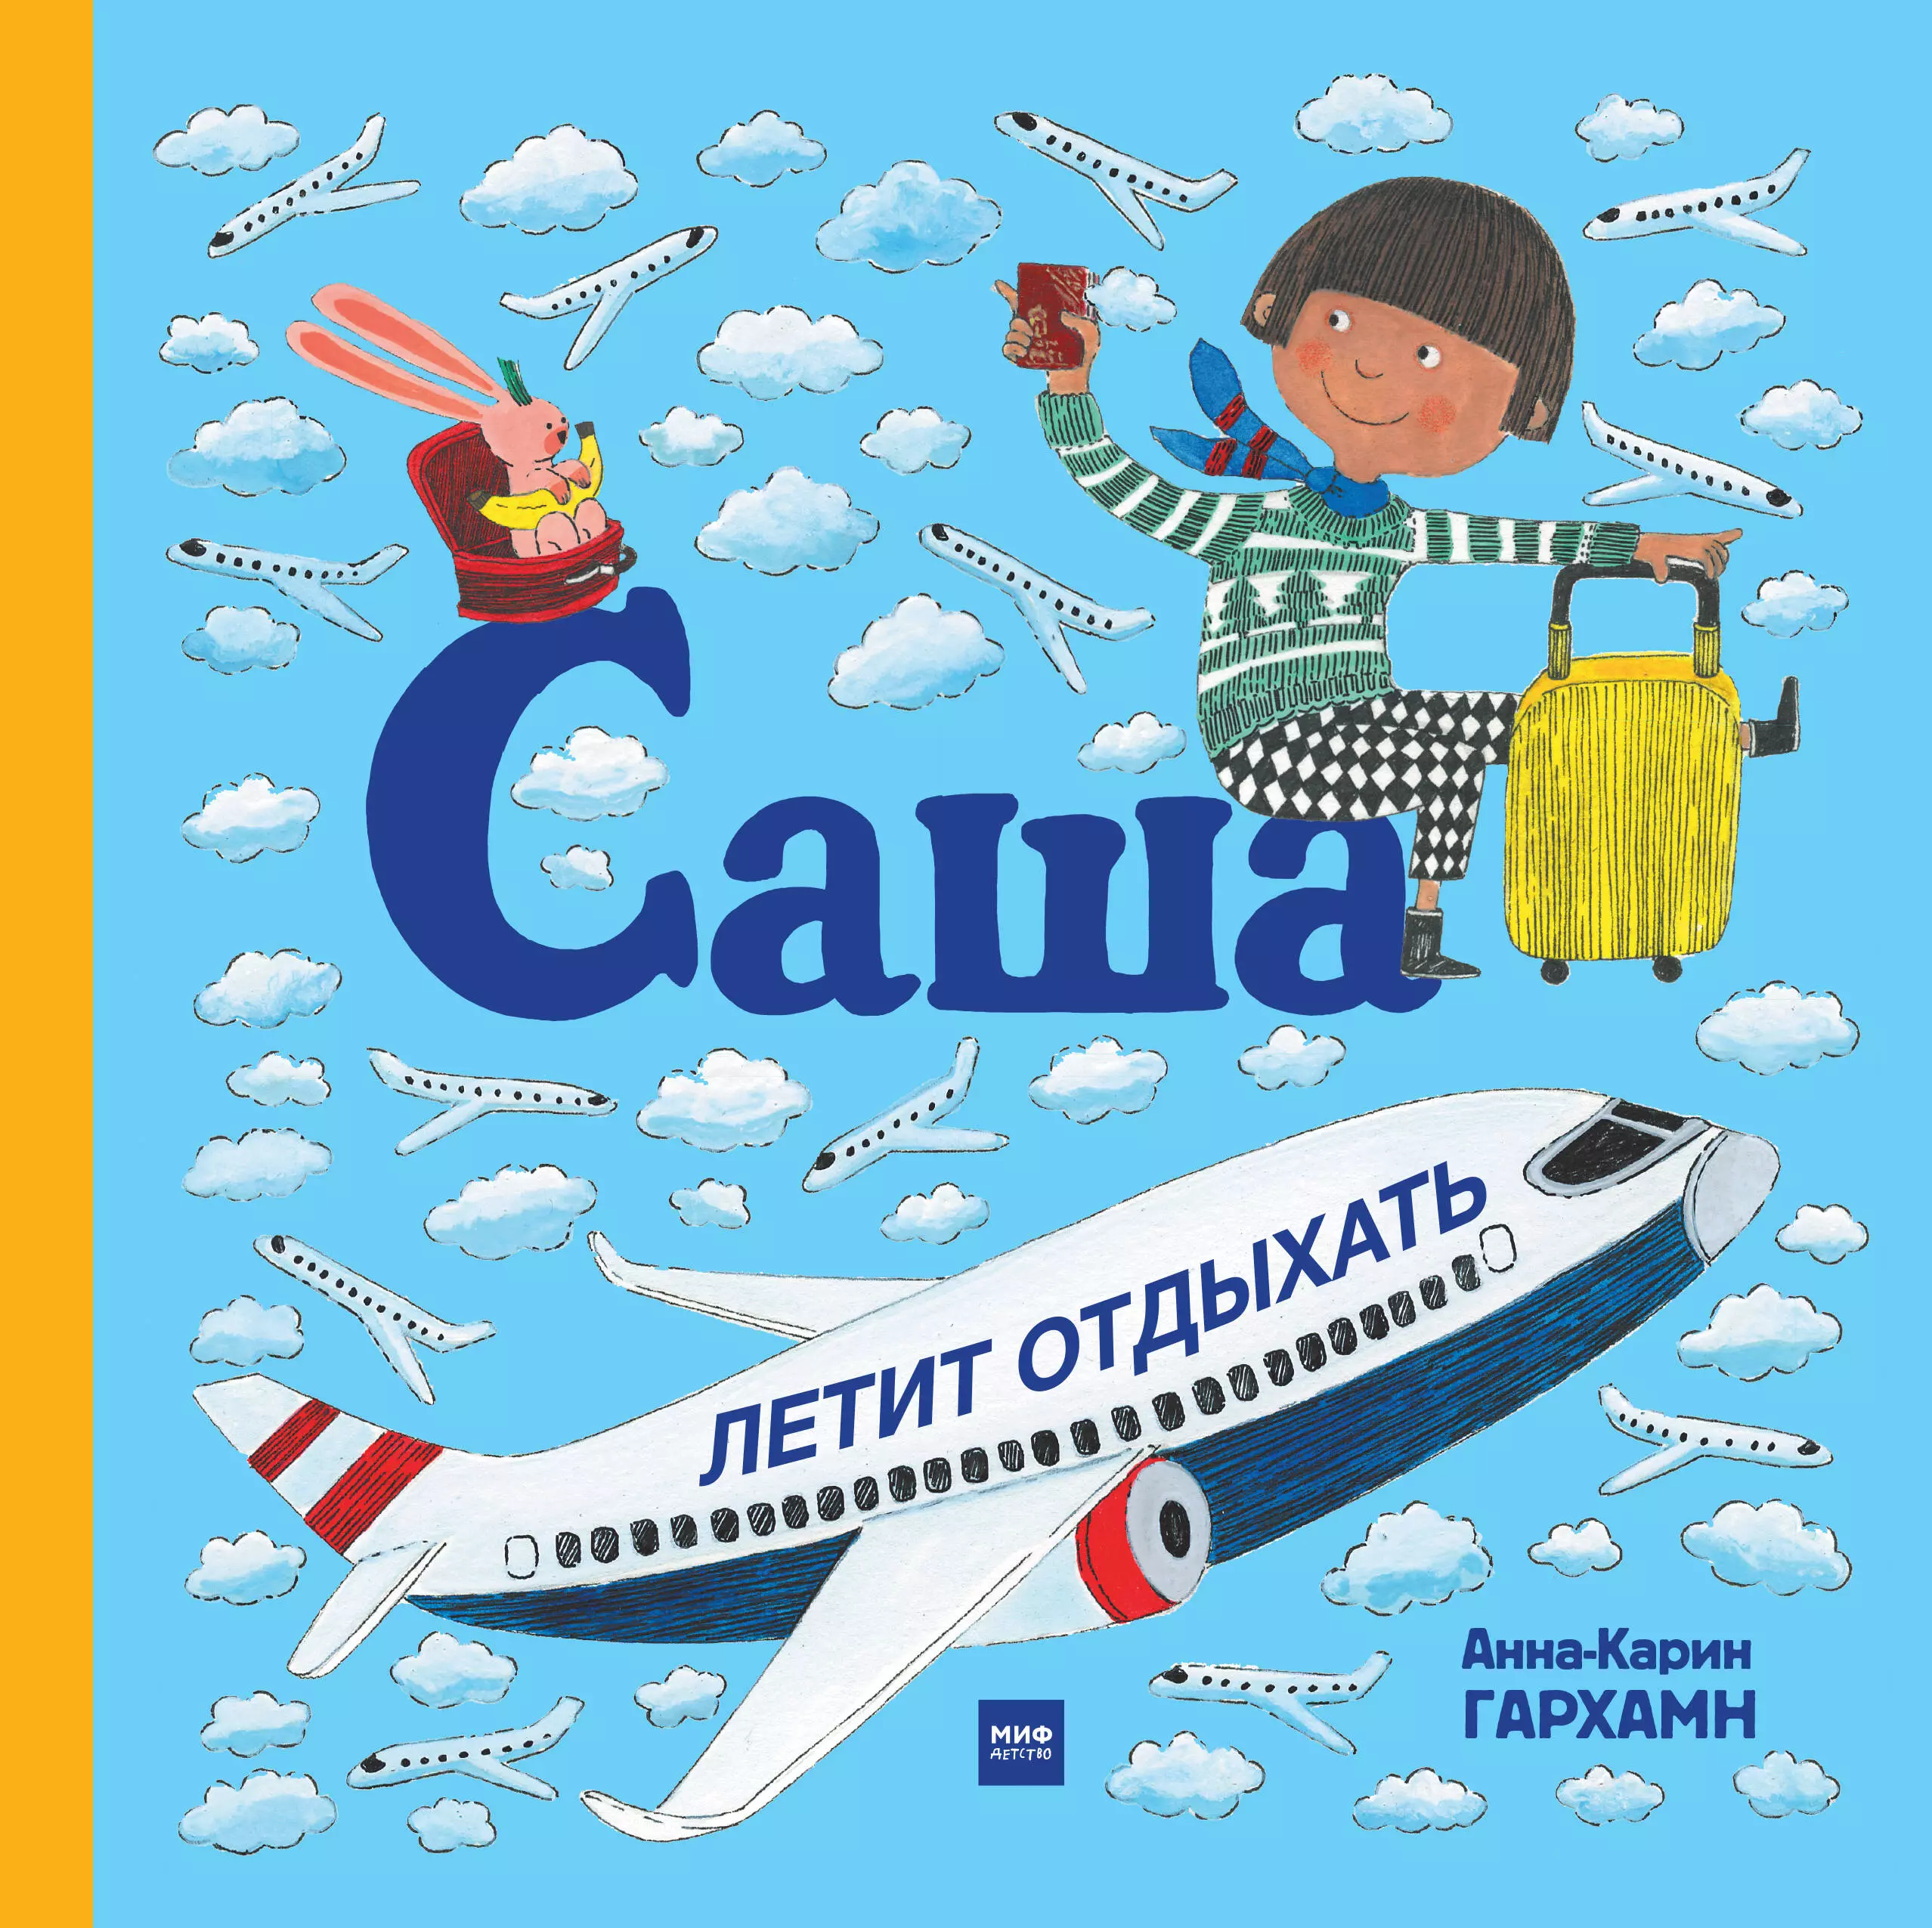 Саша книгу в магазине. Саша летит отдыхать книга. Полет в самолете детская книжка иллюстрации. Книга про полет в самолете для детей. Отдых с книгой.